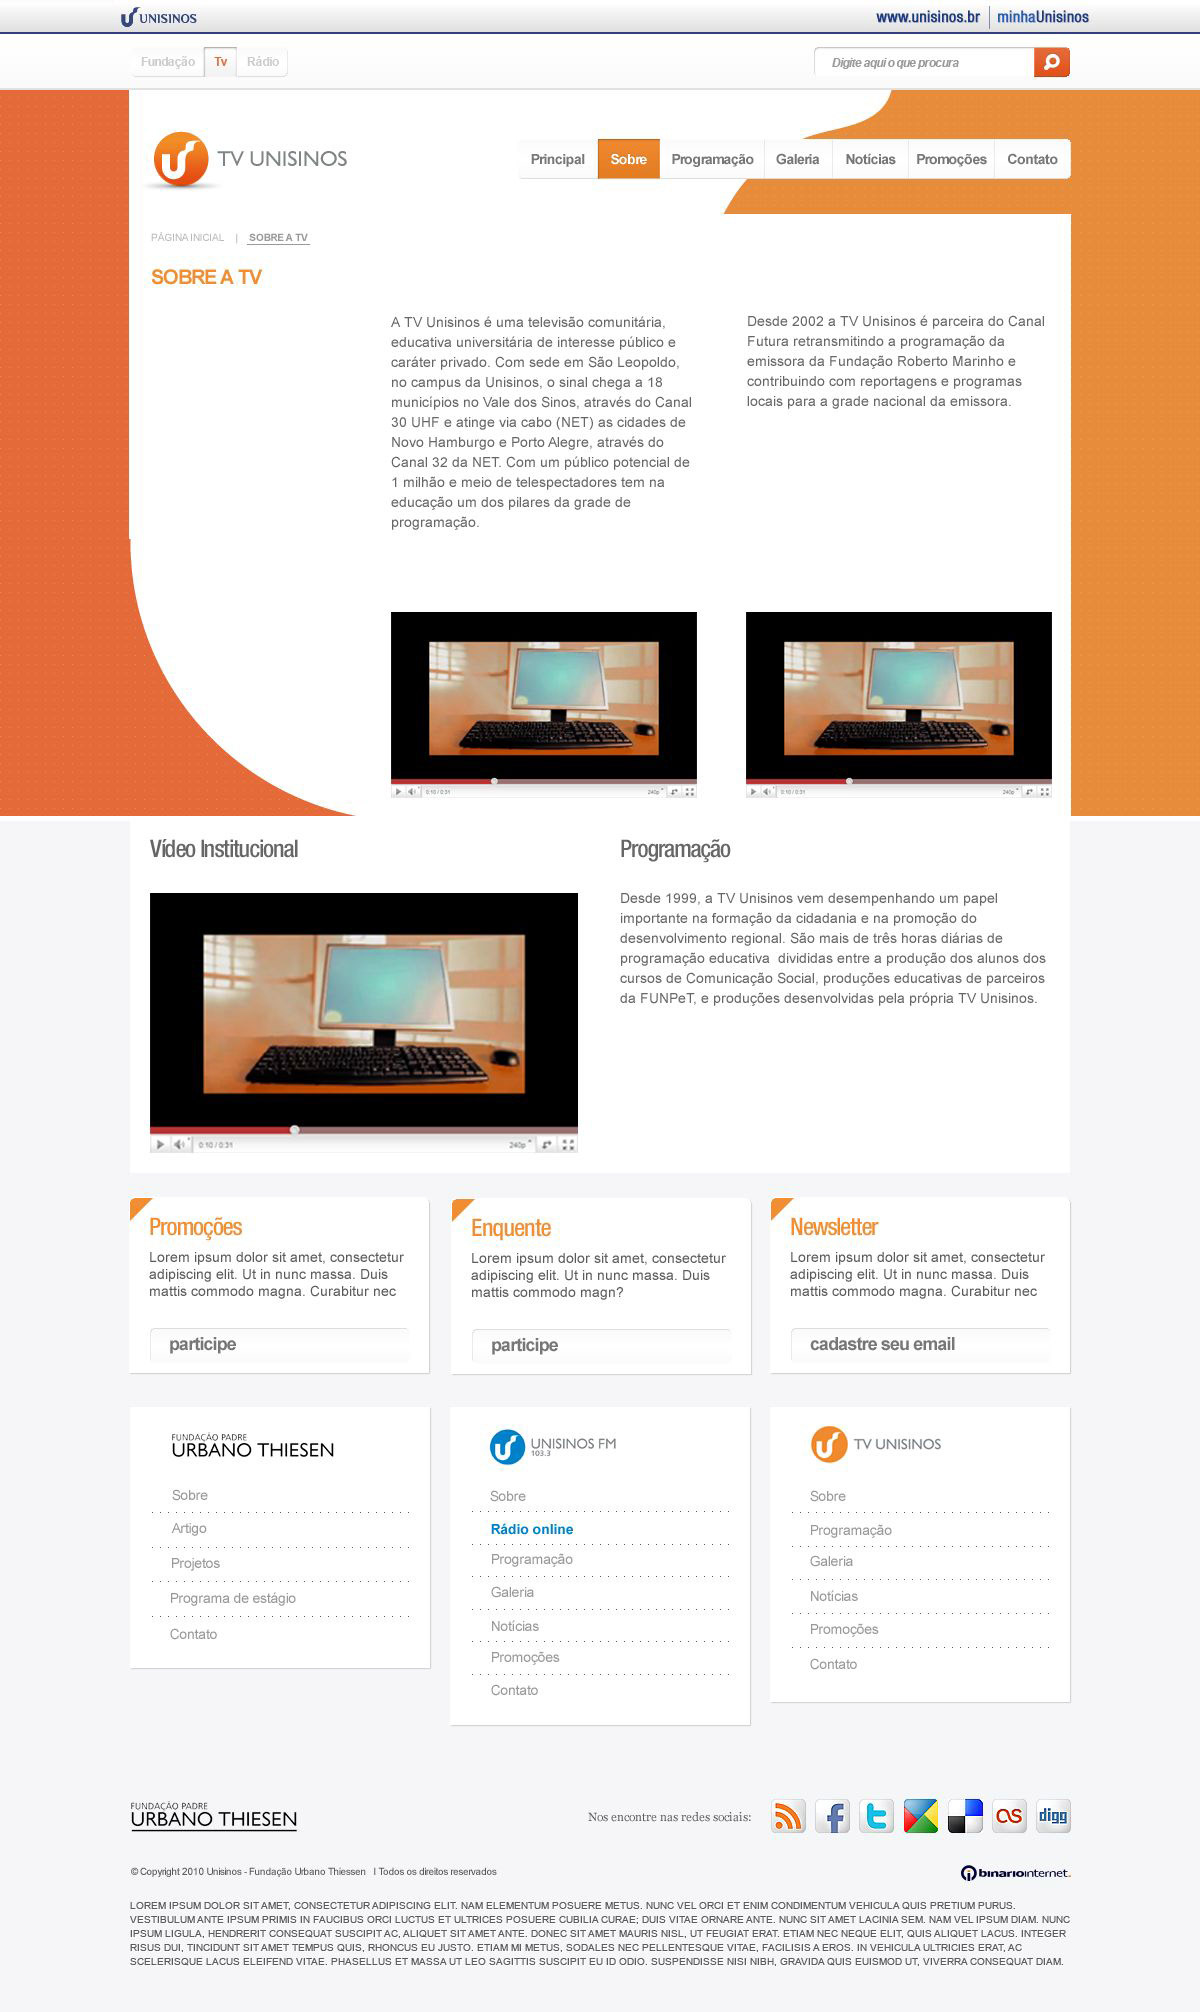 Webdesign design concept design ux UI Layout inspiration